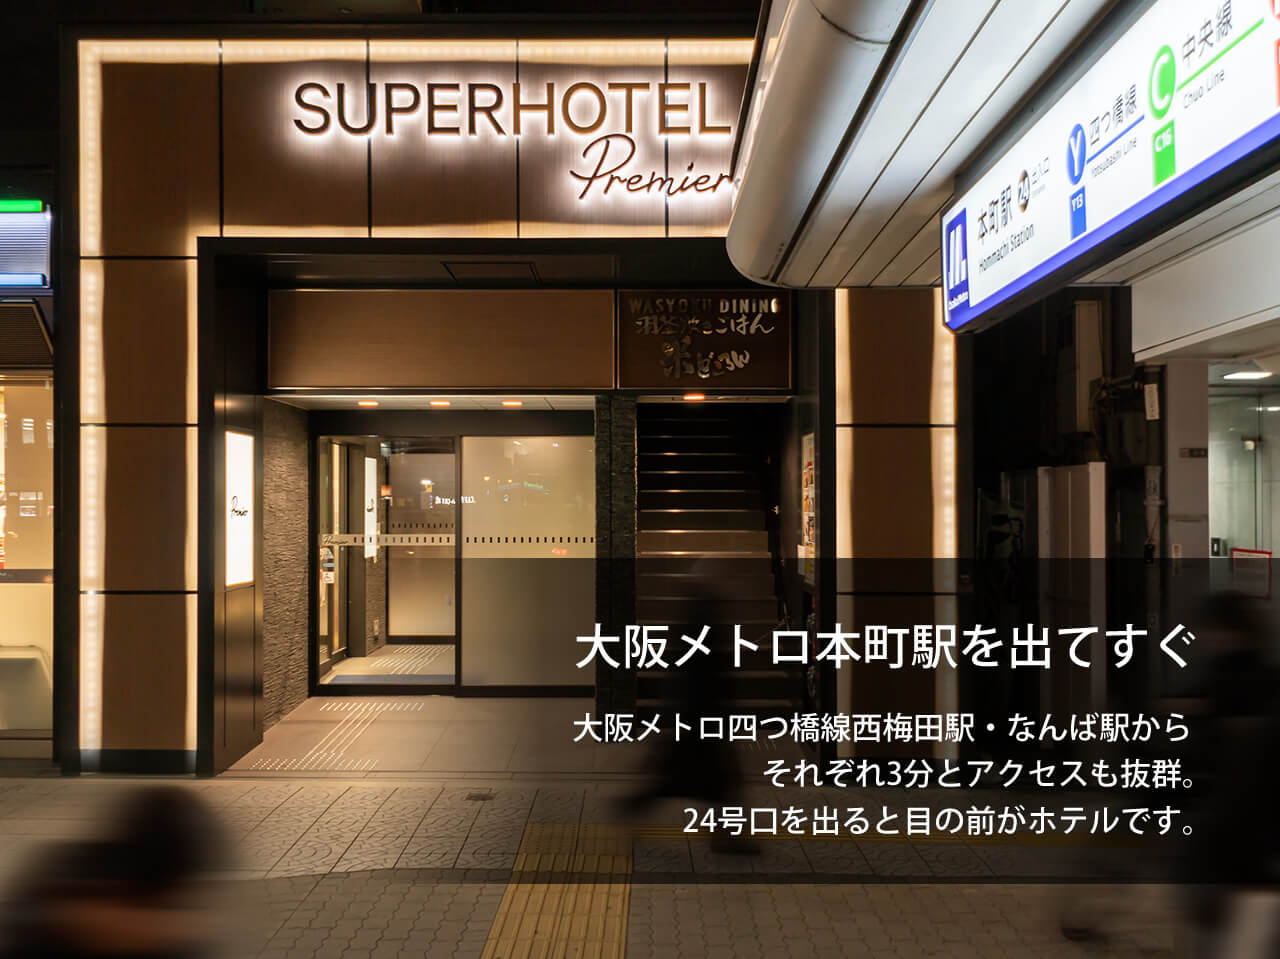 Premier本町駅前 -  天然温泉- 超级酒店